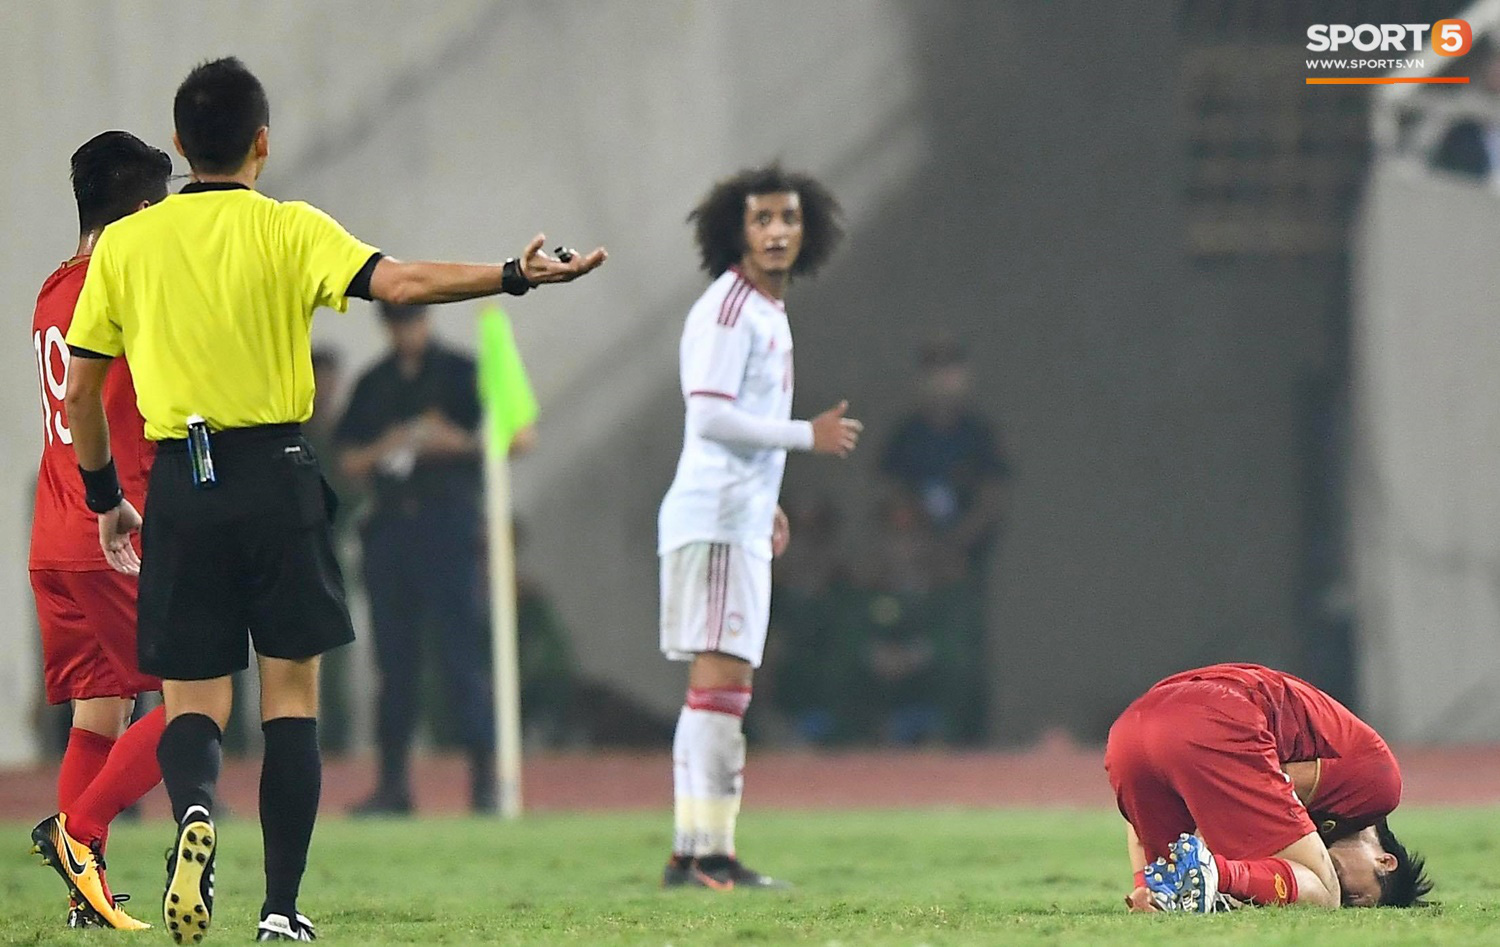 Đôi chân pha lê Tuấn Anh "vô hiệu hóa" cầu thủ UAE hay nhất châu Á